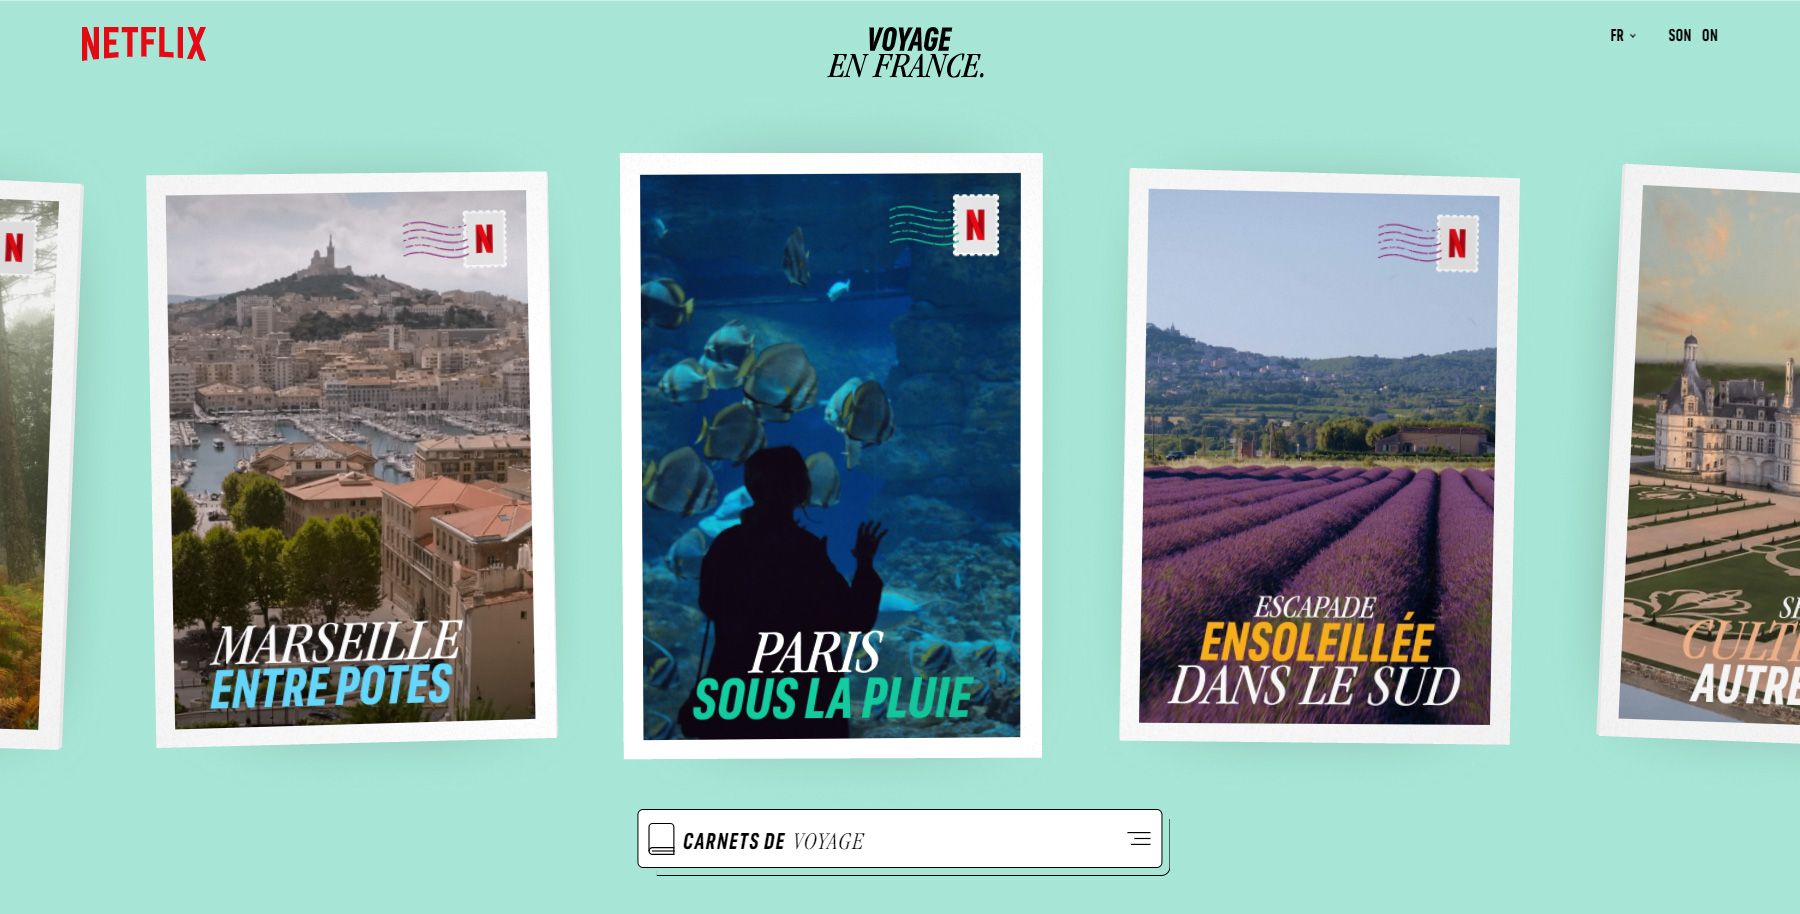 Netflix Voyage en France - Website of the Day